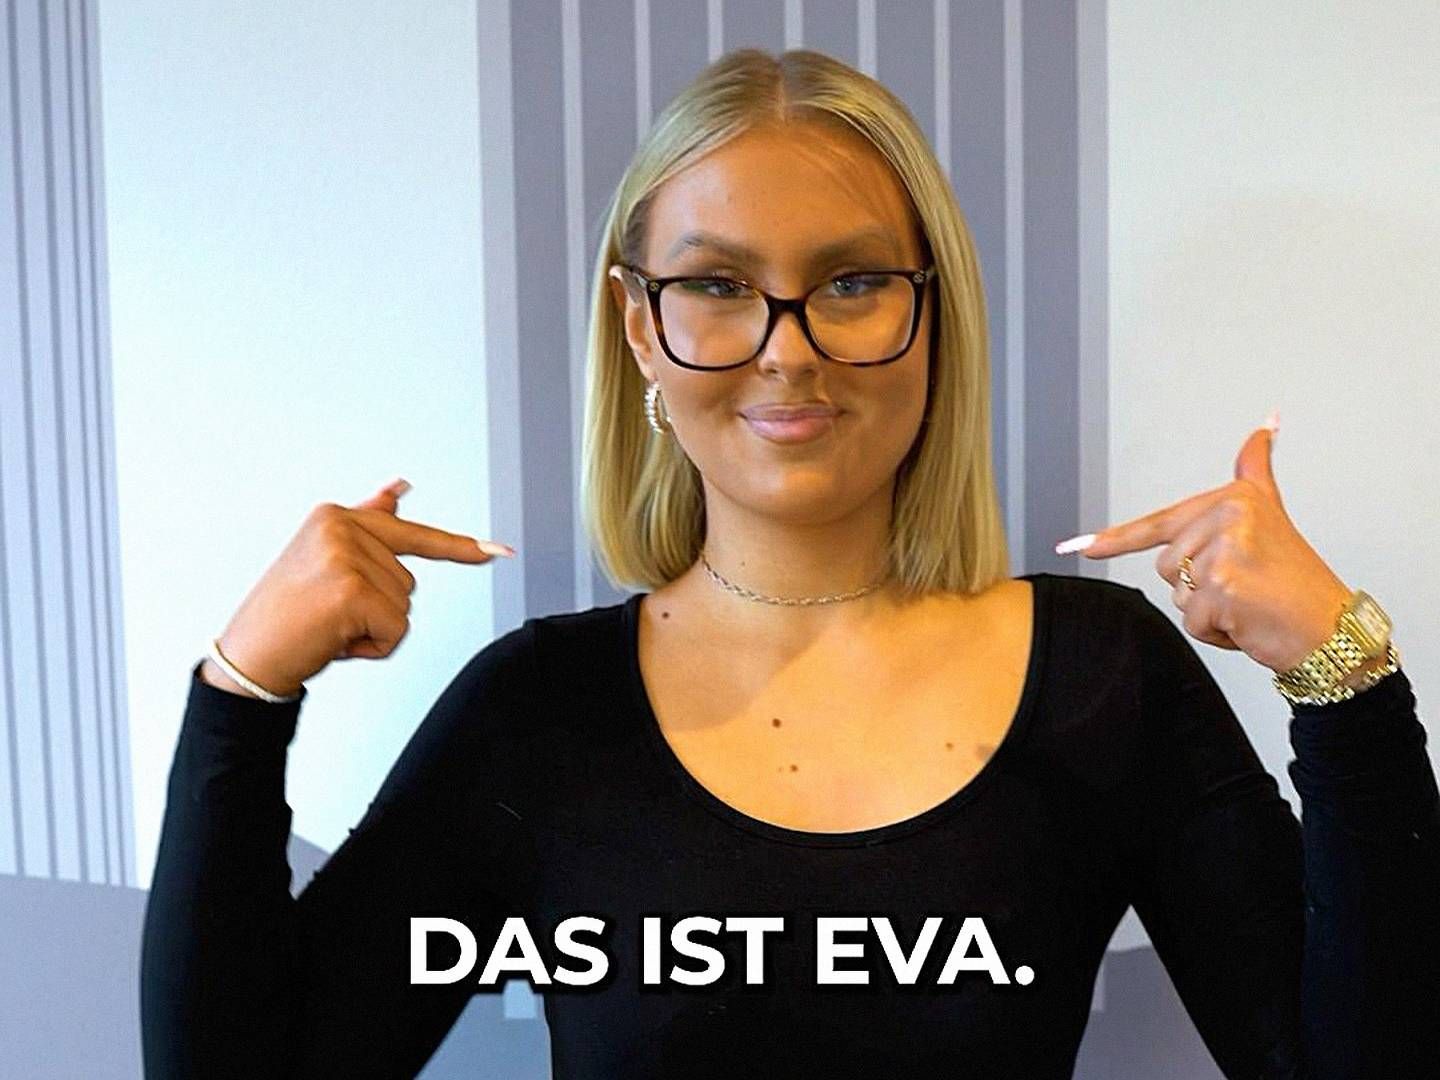 "Das ist Eva": Dieses Video der Sparkasse Dortmund hat auf TikTok schon 1,2 Millionen Klicks generiert. | Foto: Sparkasse Dortmund